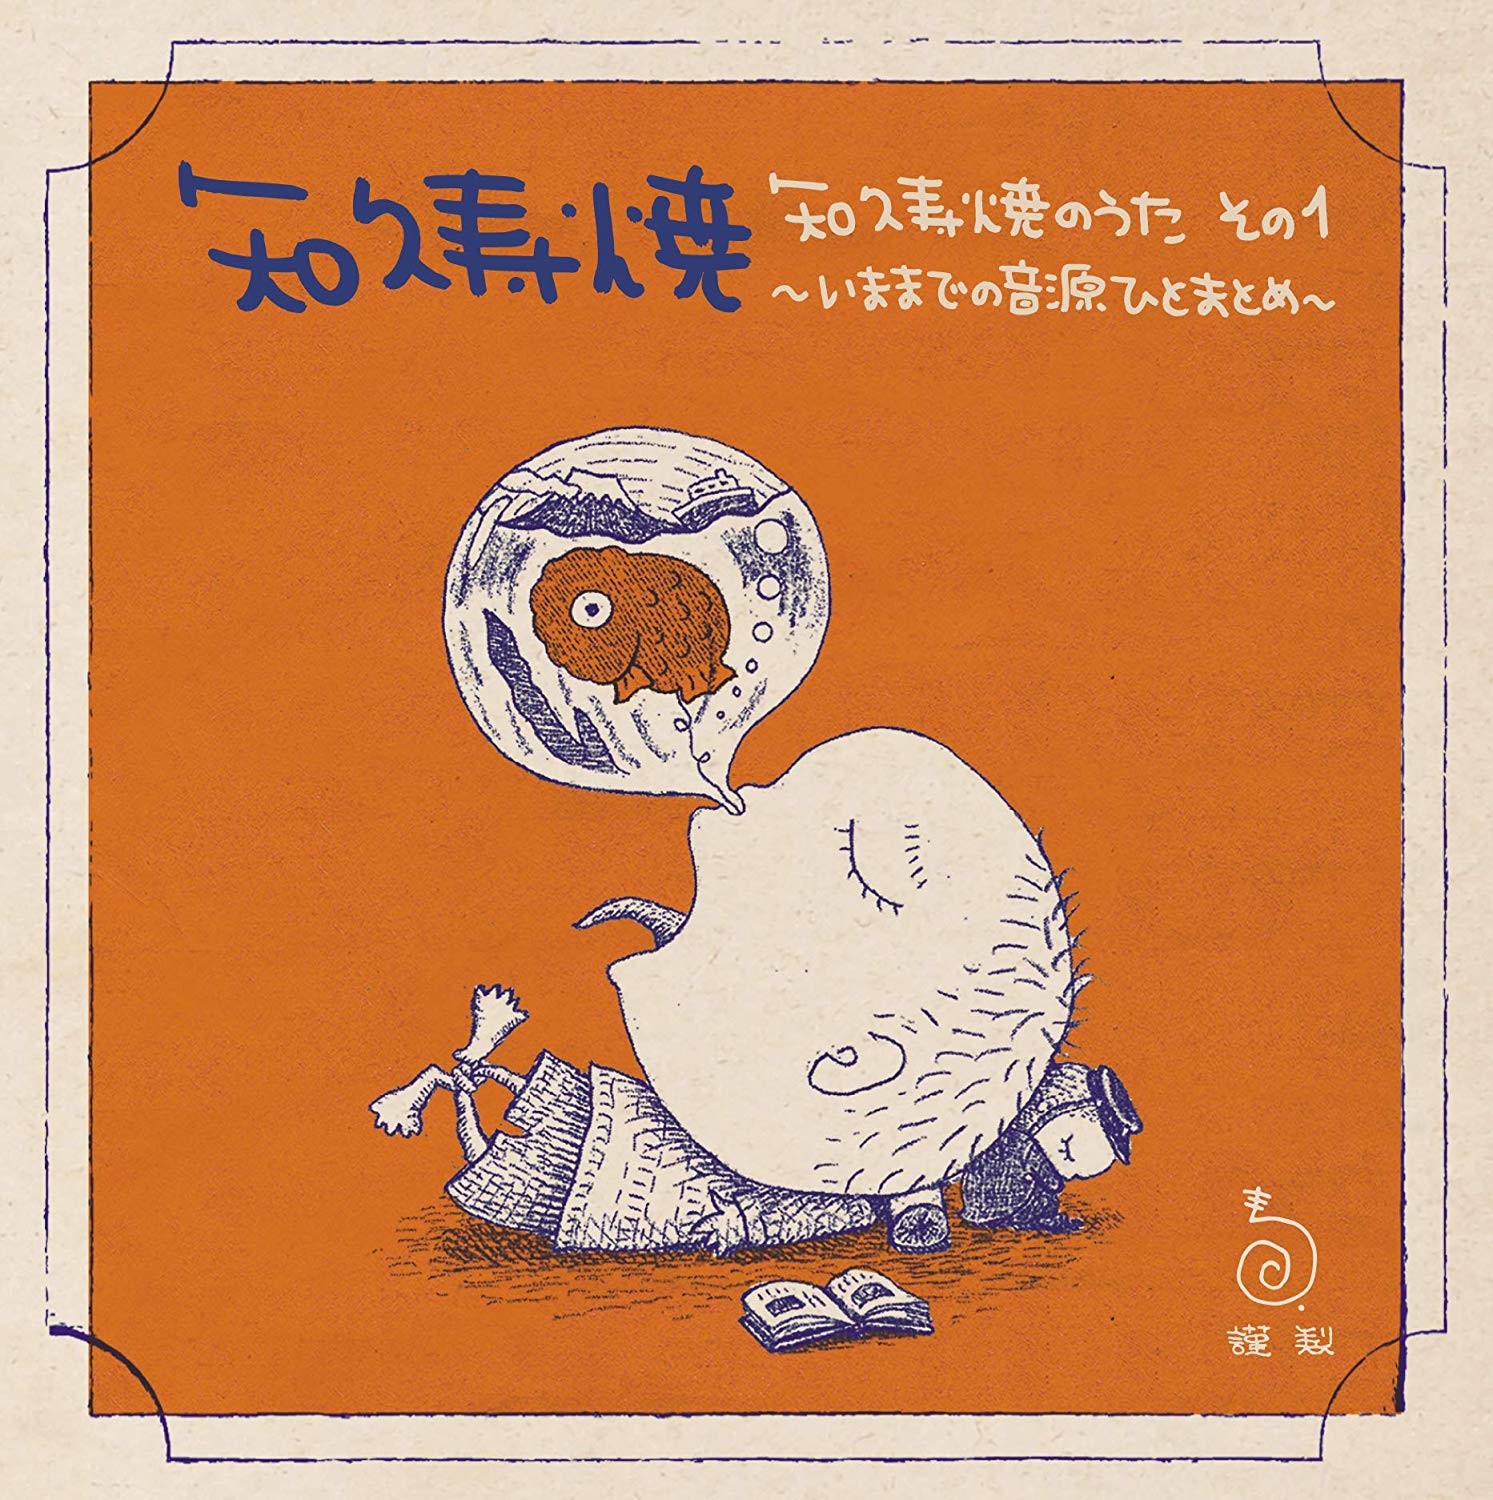 知久寿焼 (Toshiaki Chiku) – 知久寿焼のうた　その1～いままでの音源ひとまとめ～ [FLAC + MP3 320 / CD] [2019.03.20]